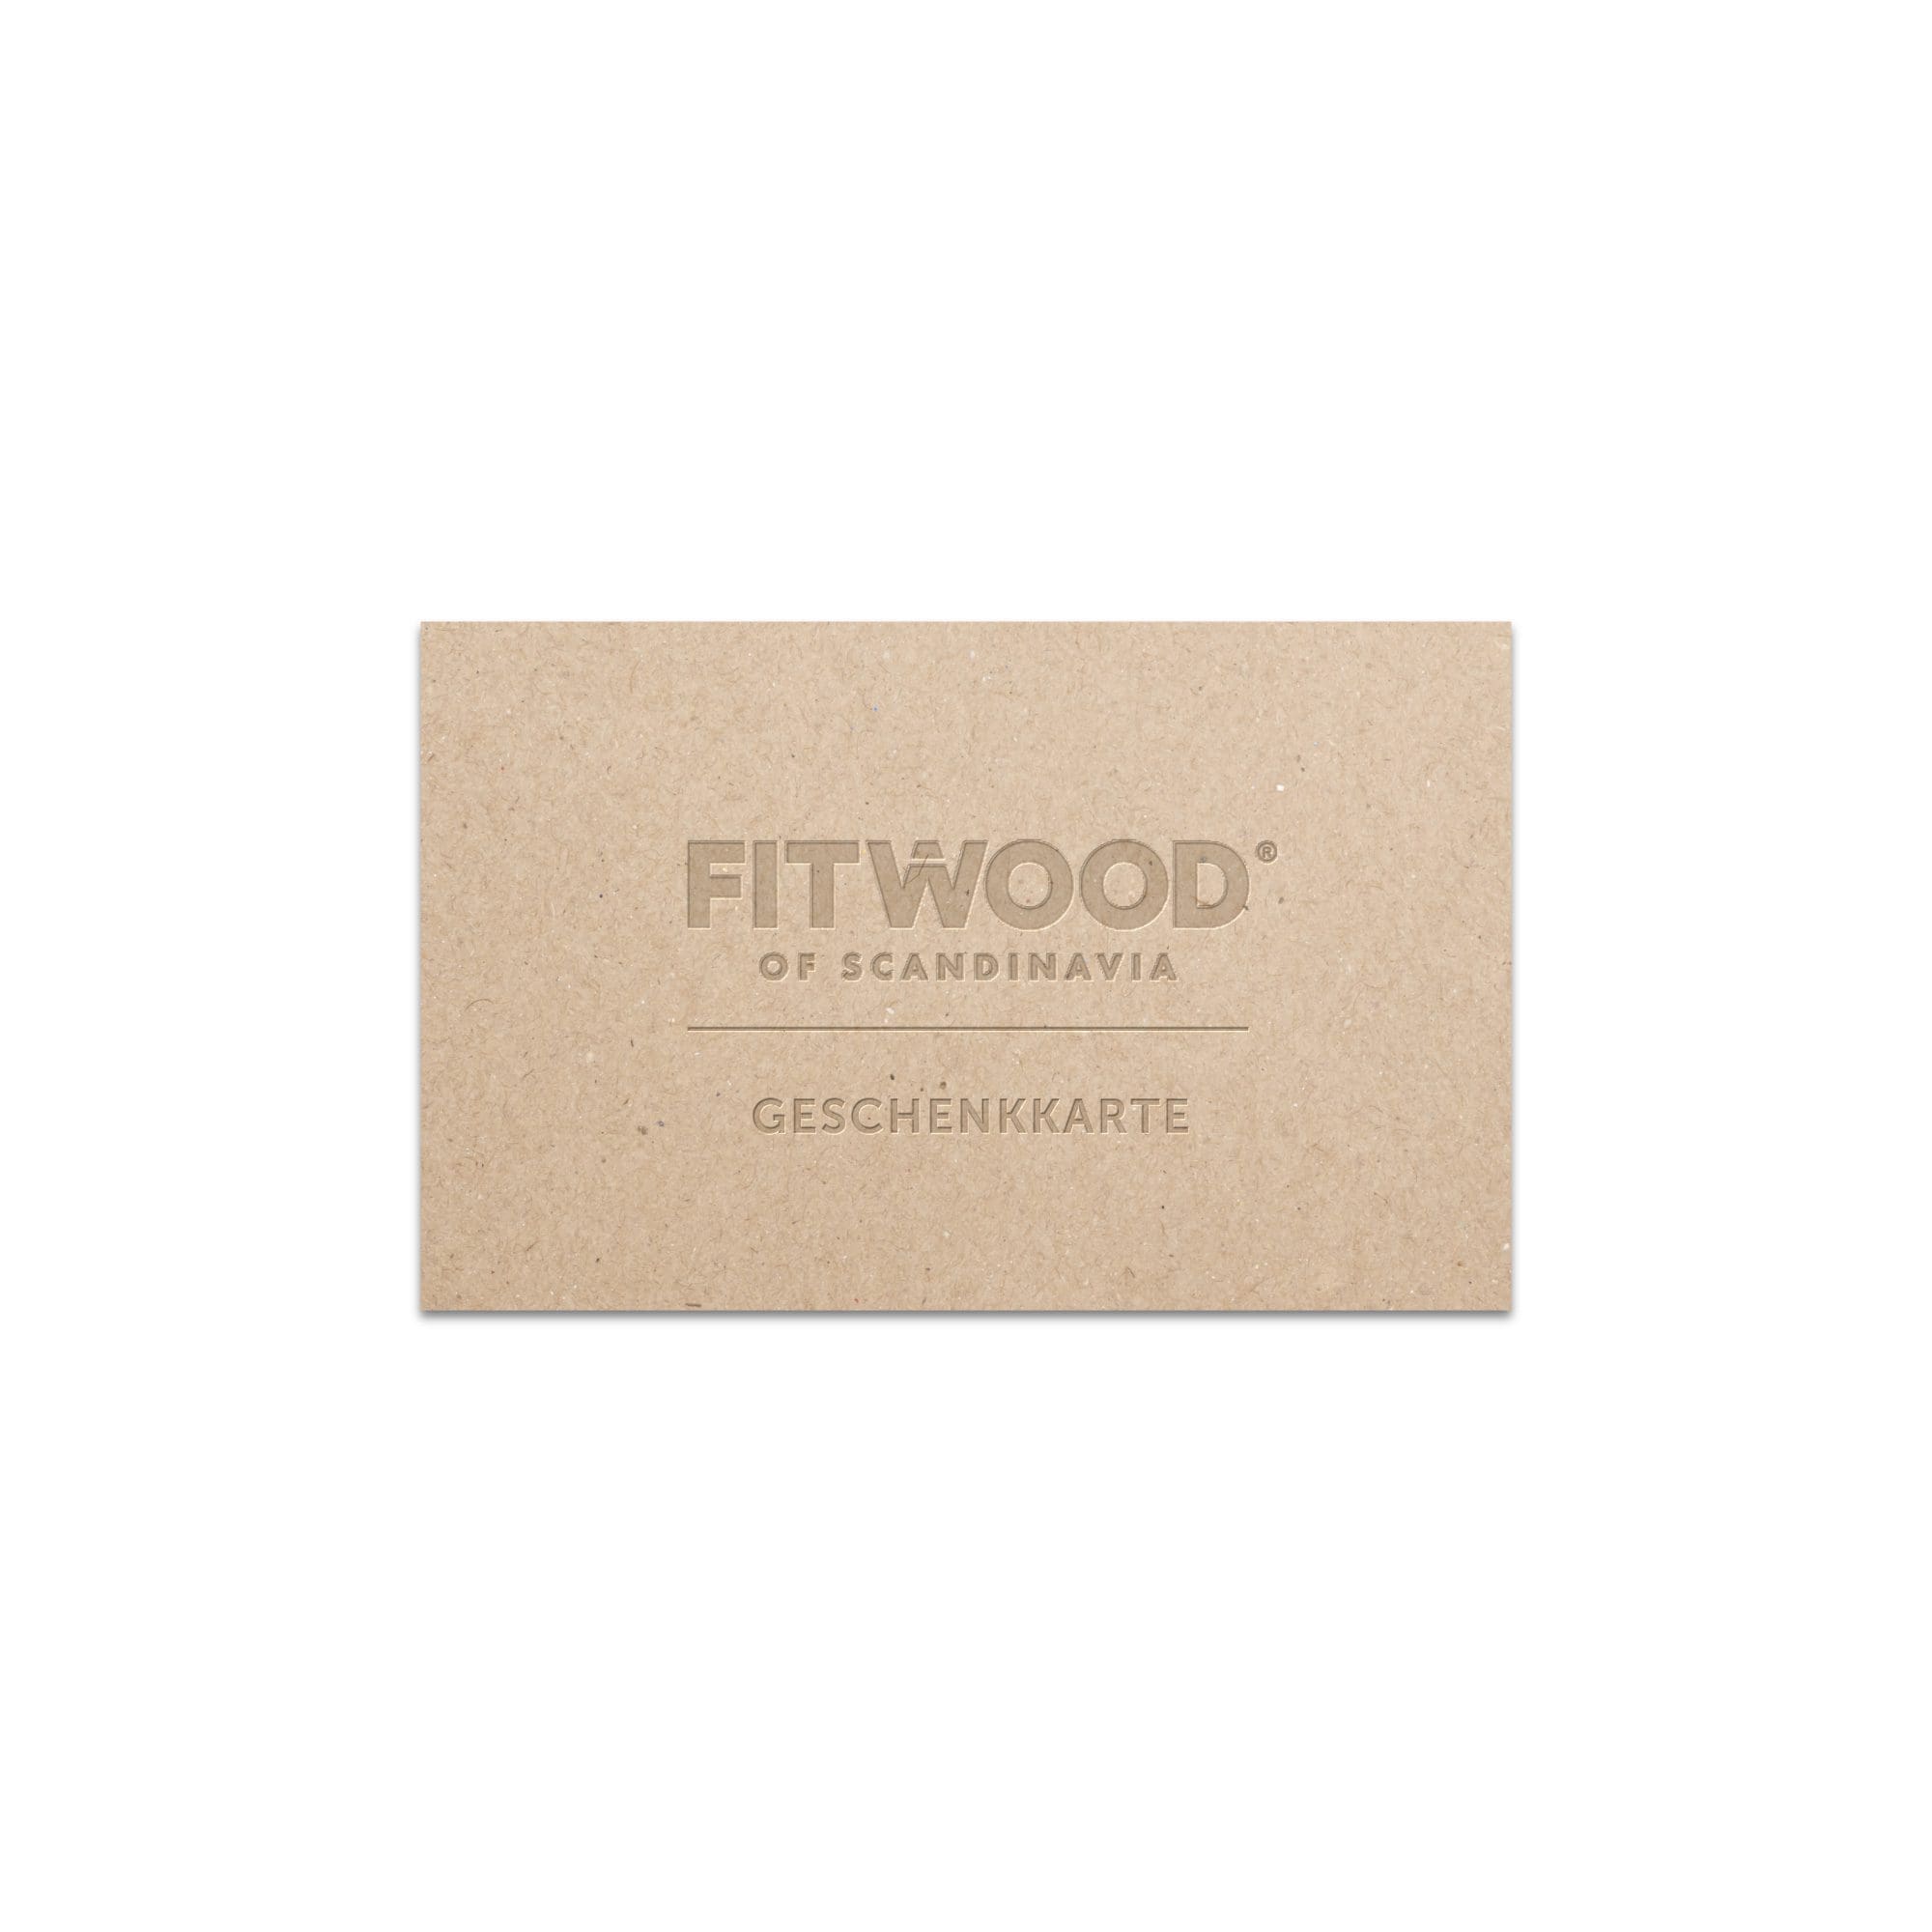 FitWood Geschenkkarte